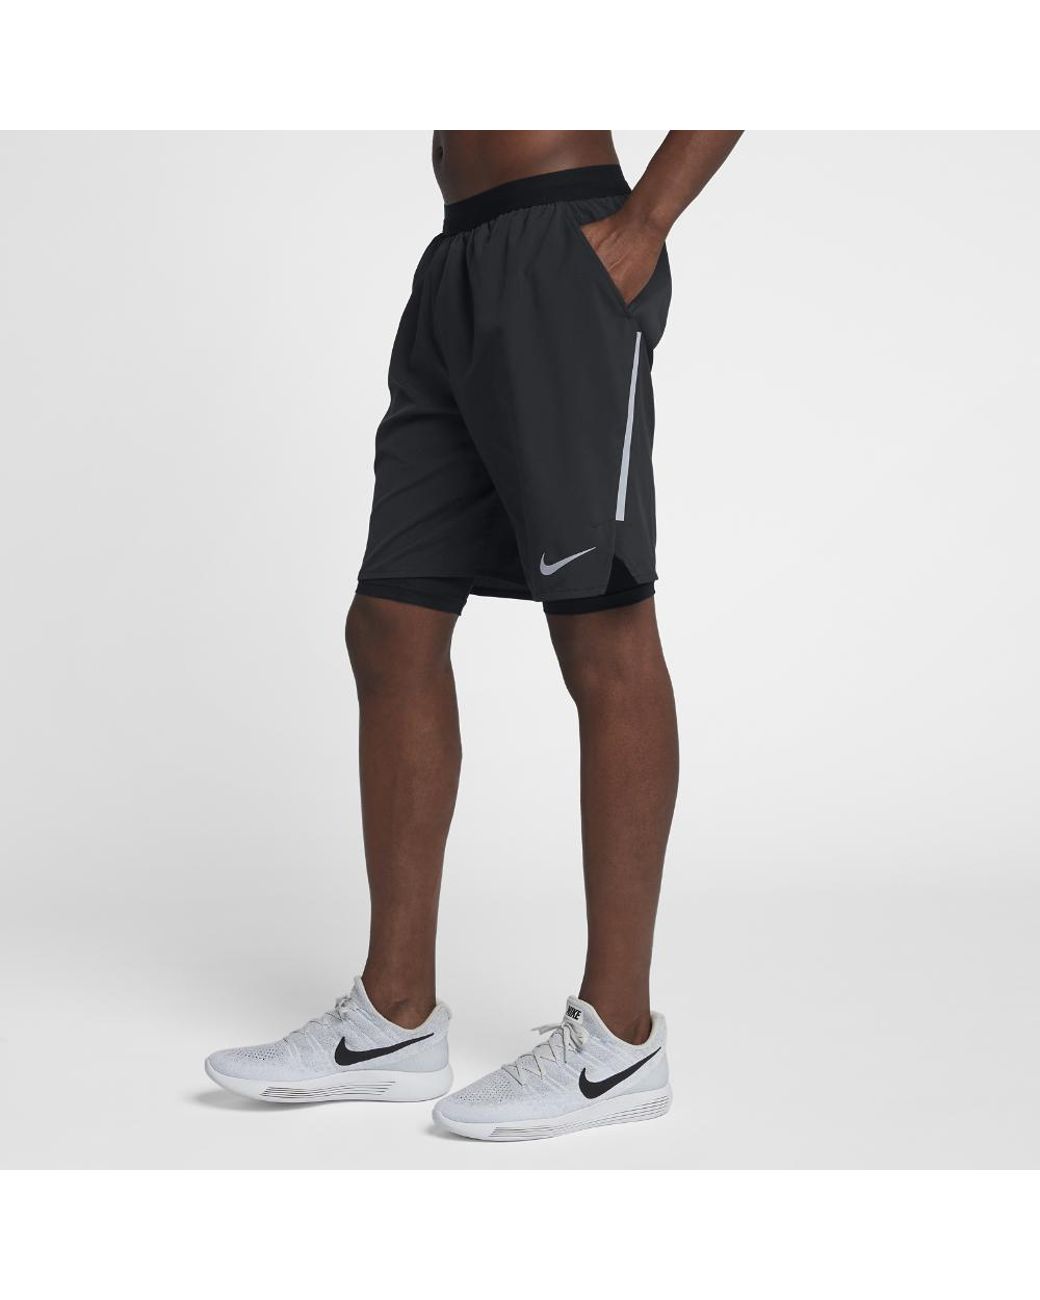 Nike Flex Stride Men's 9 2-in-1 Running Shorts in Black for Men